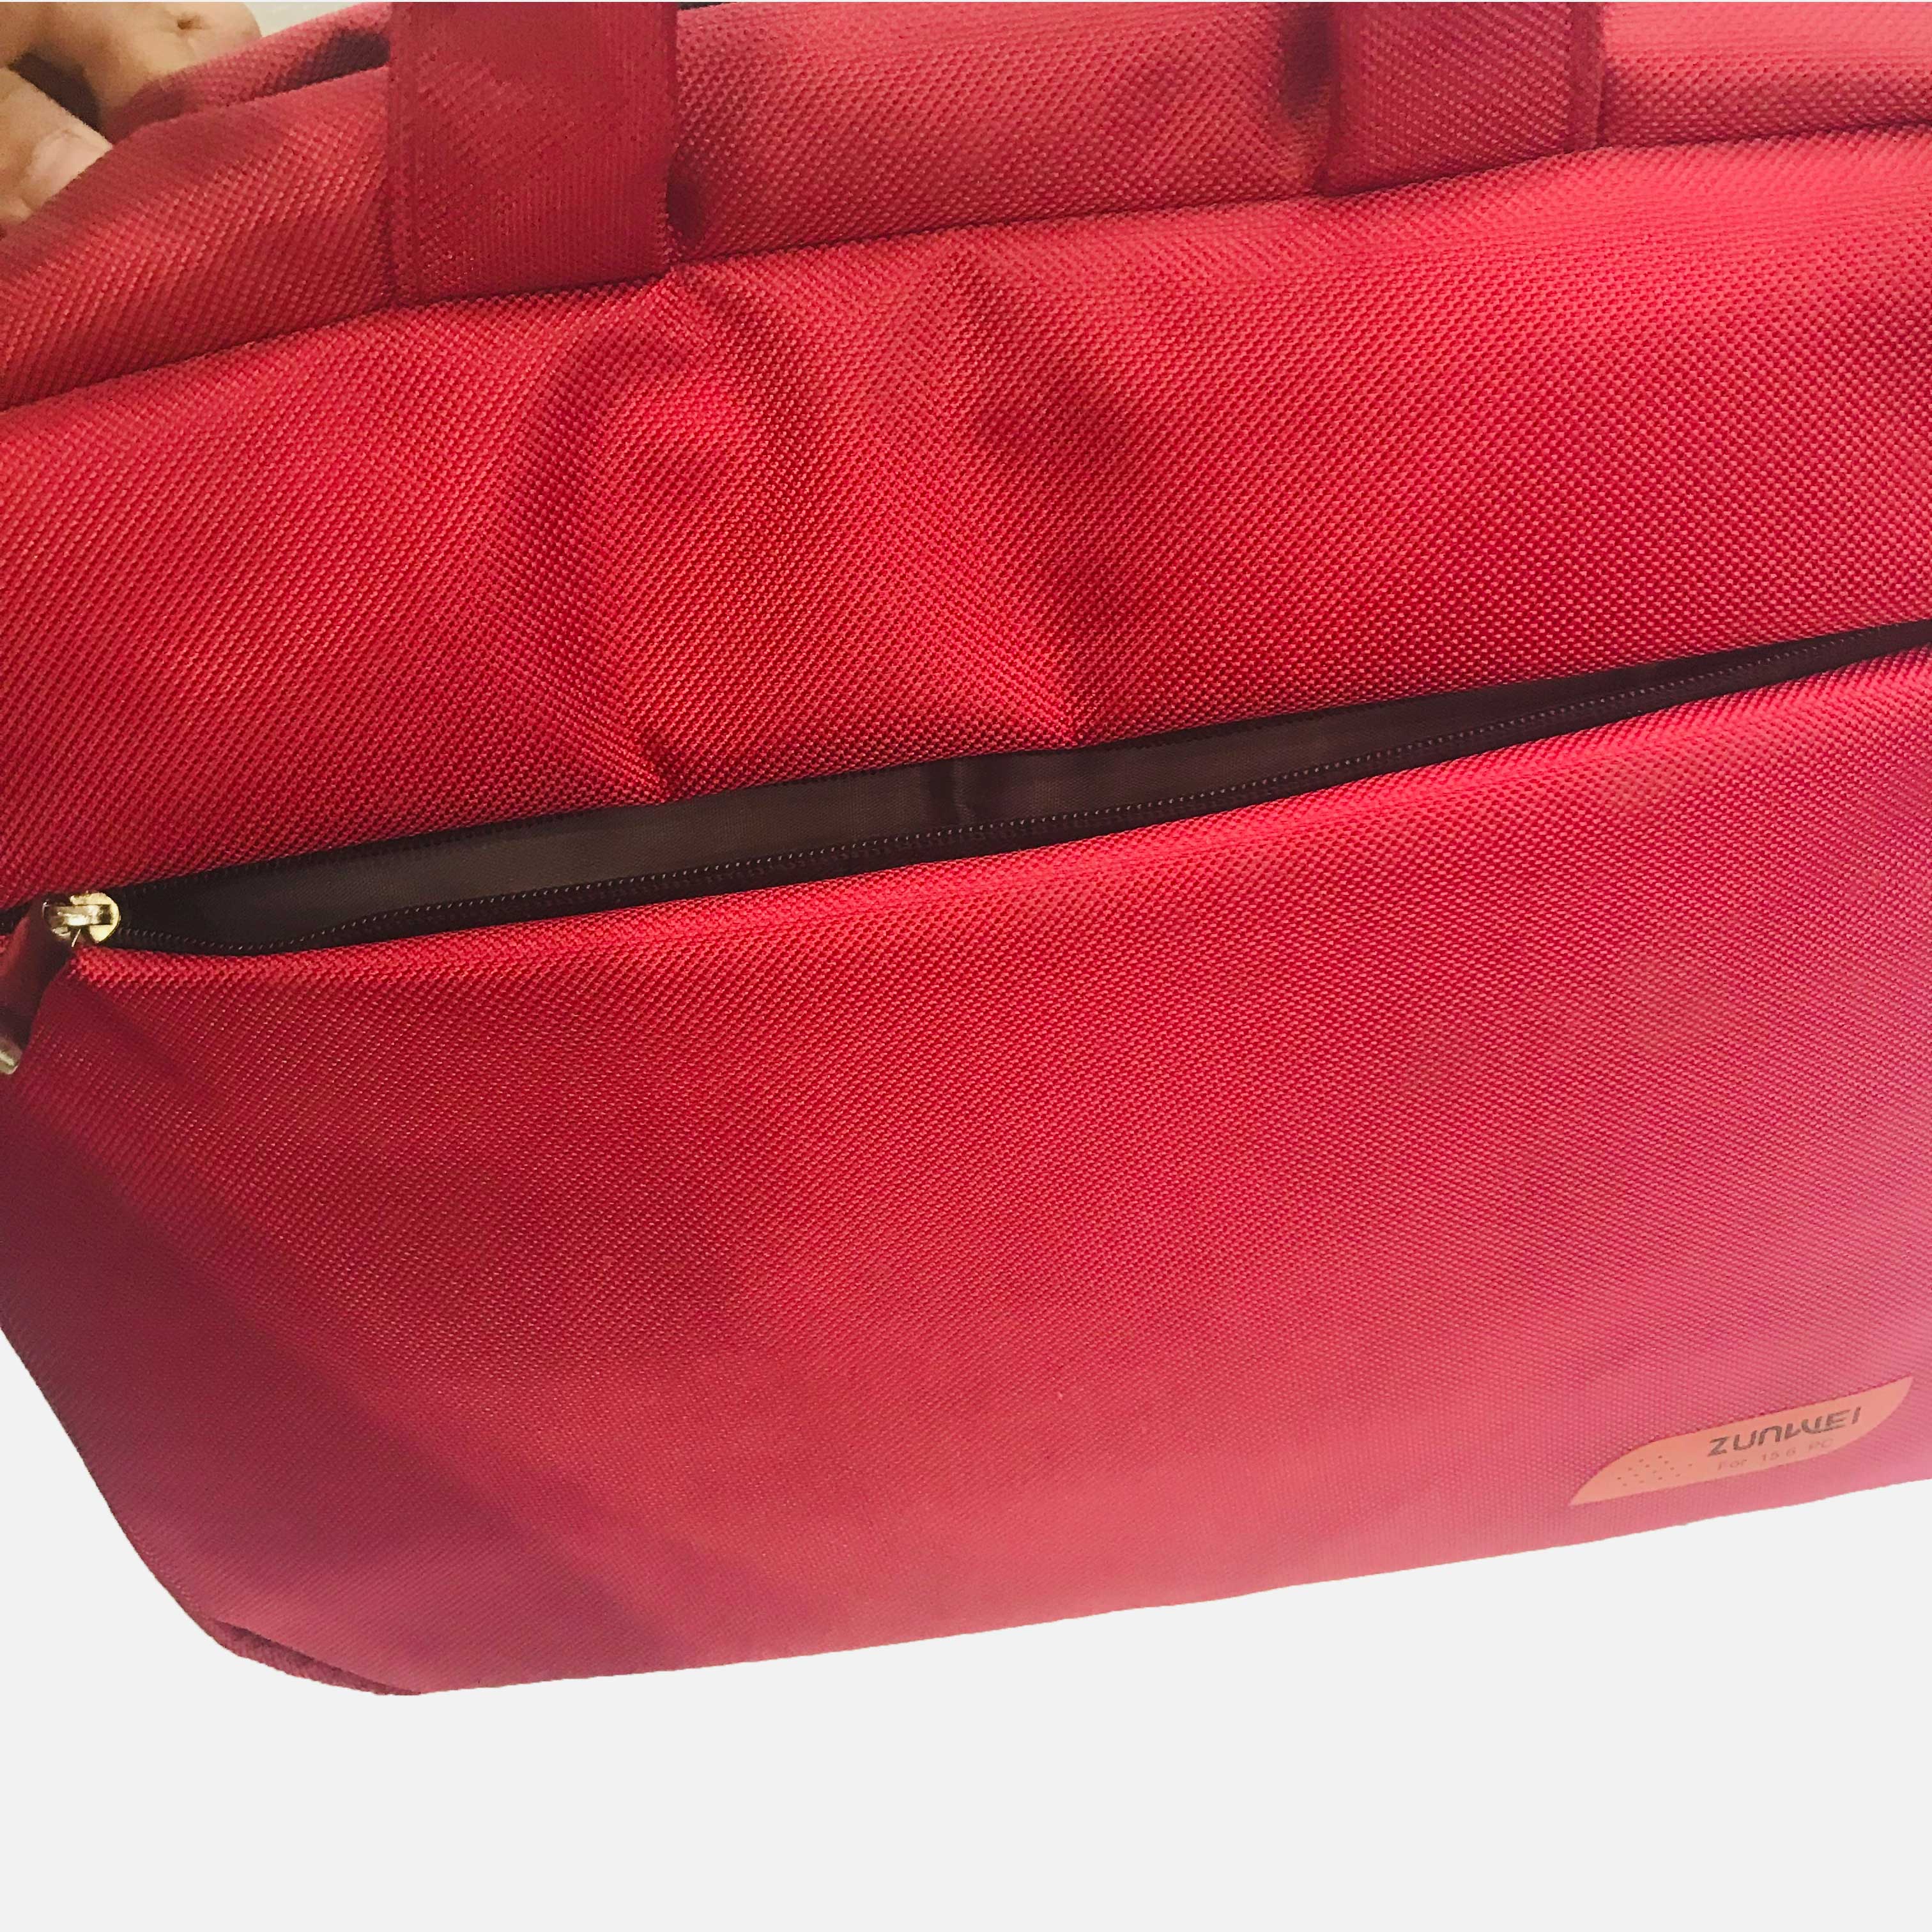 中性 单肩手提笔记本电脑包  15寸 红色